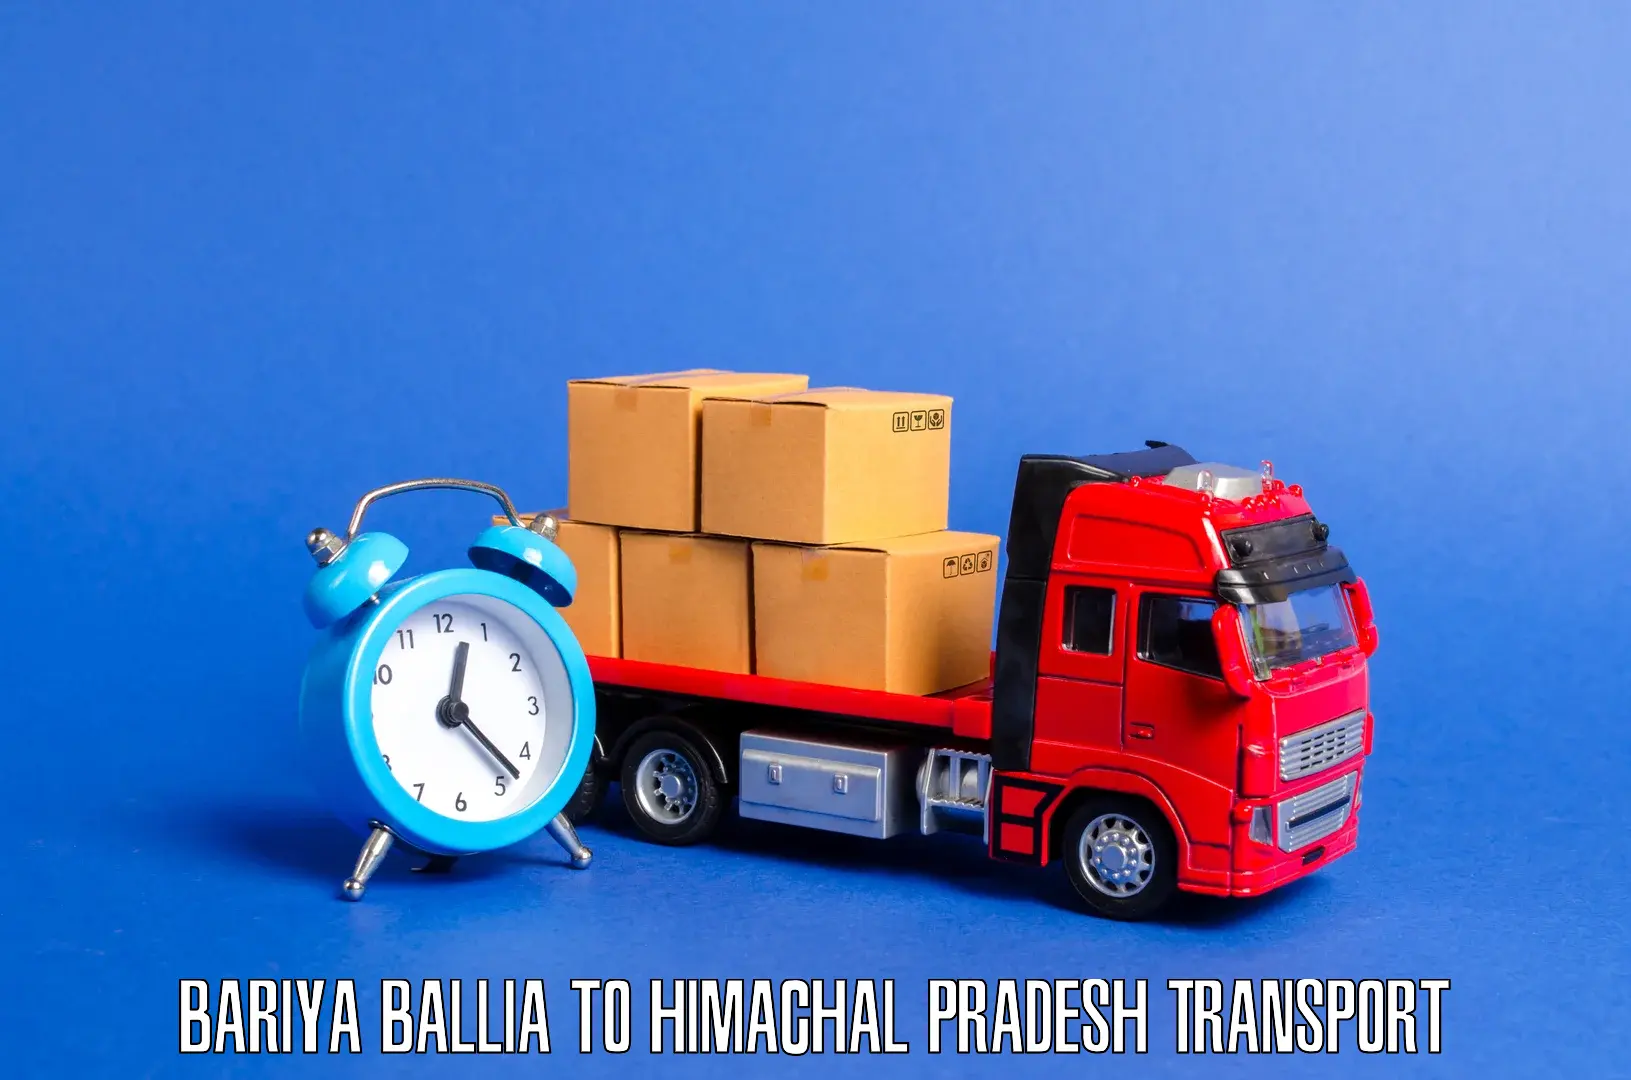 Cargo transportation services in Bariya Ballia to IIIT Una